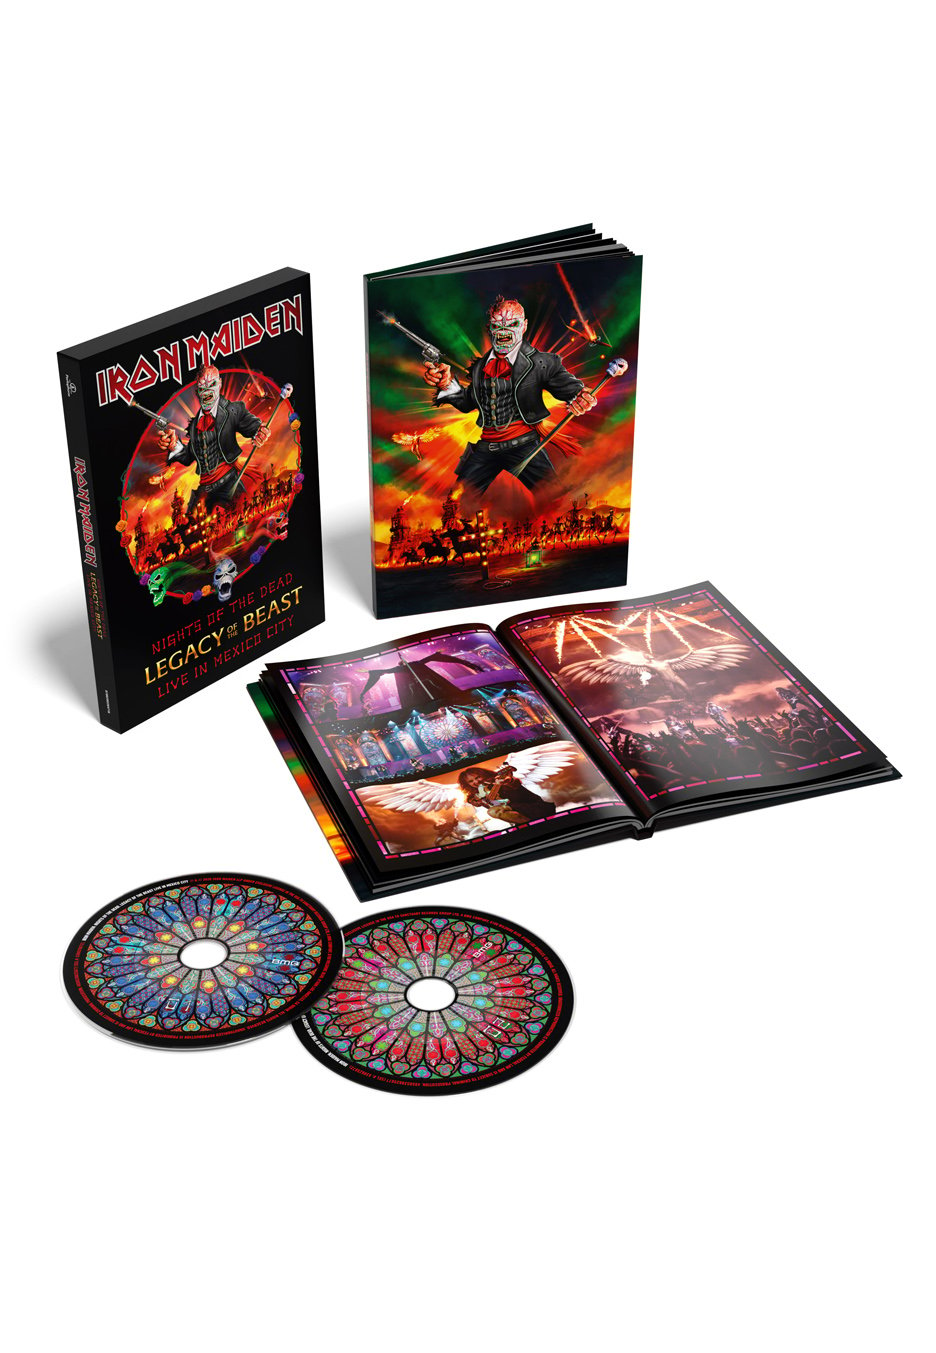 Iron Maiden - Nights Of The Dead Deluxe - Mediabook 2 CD